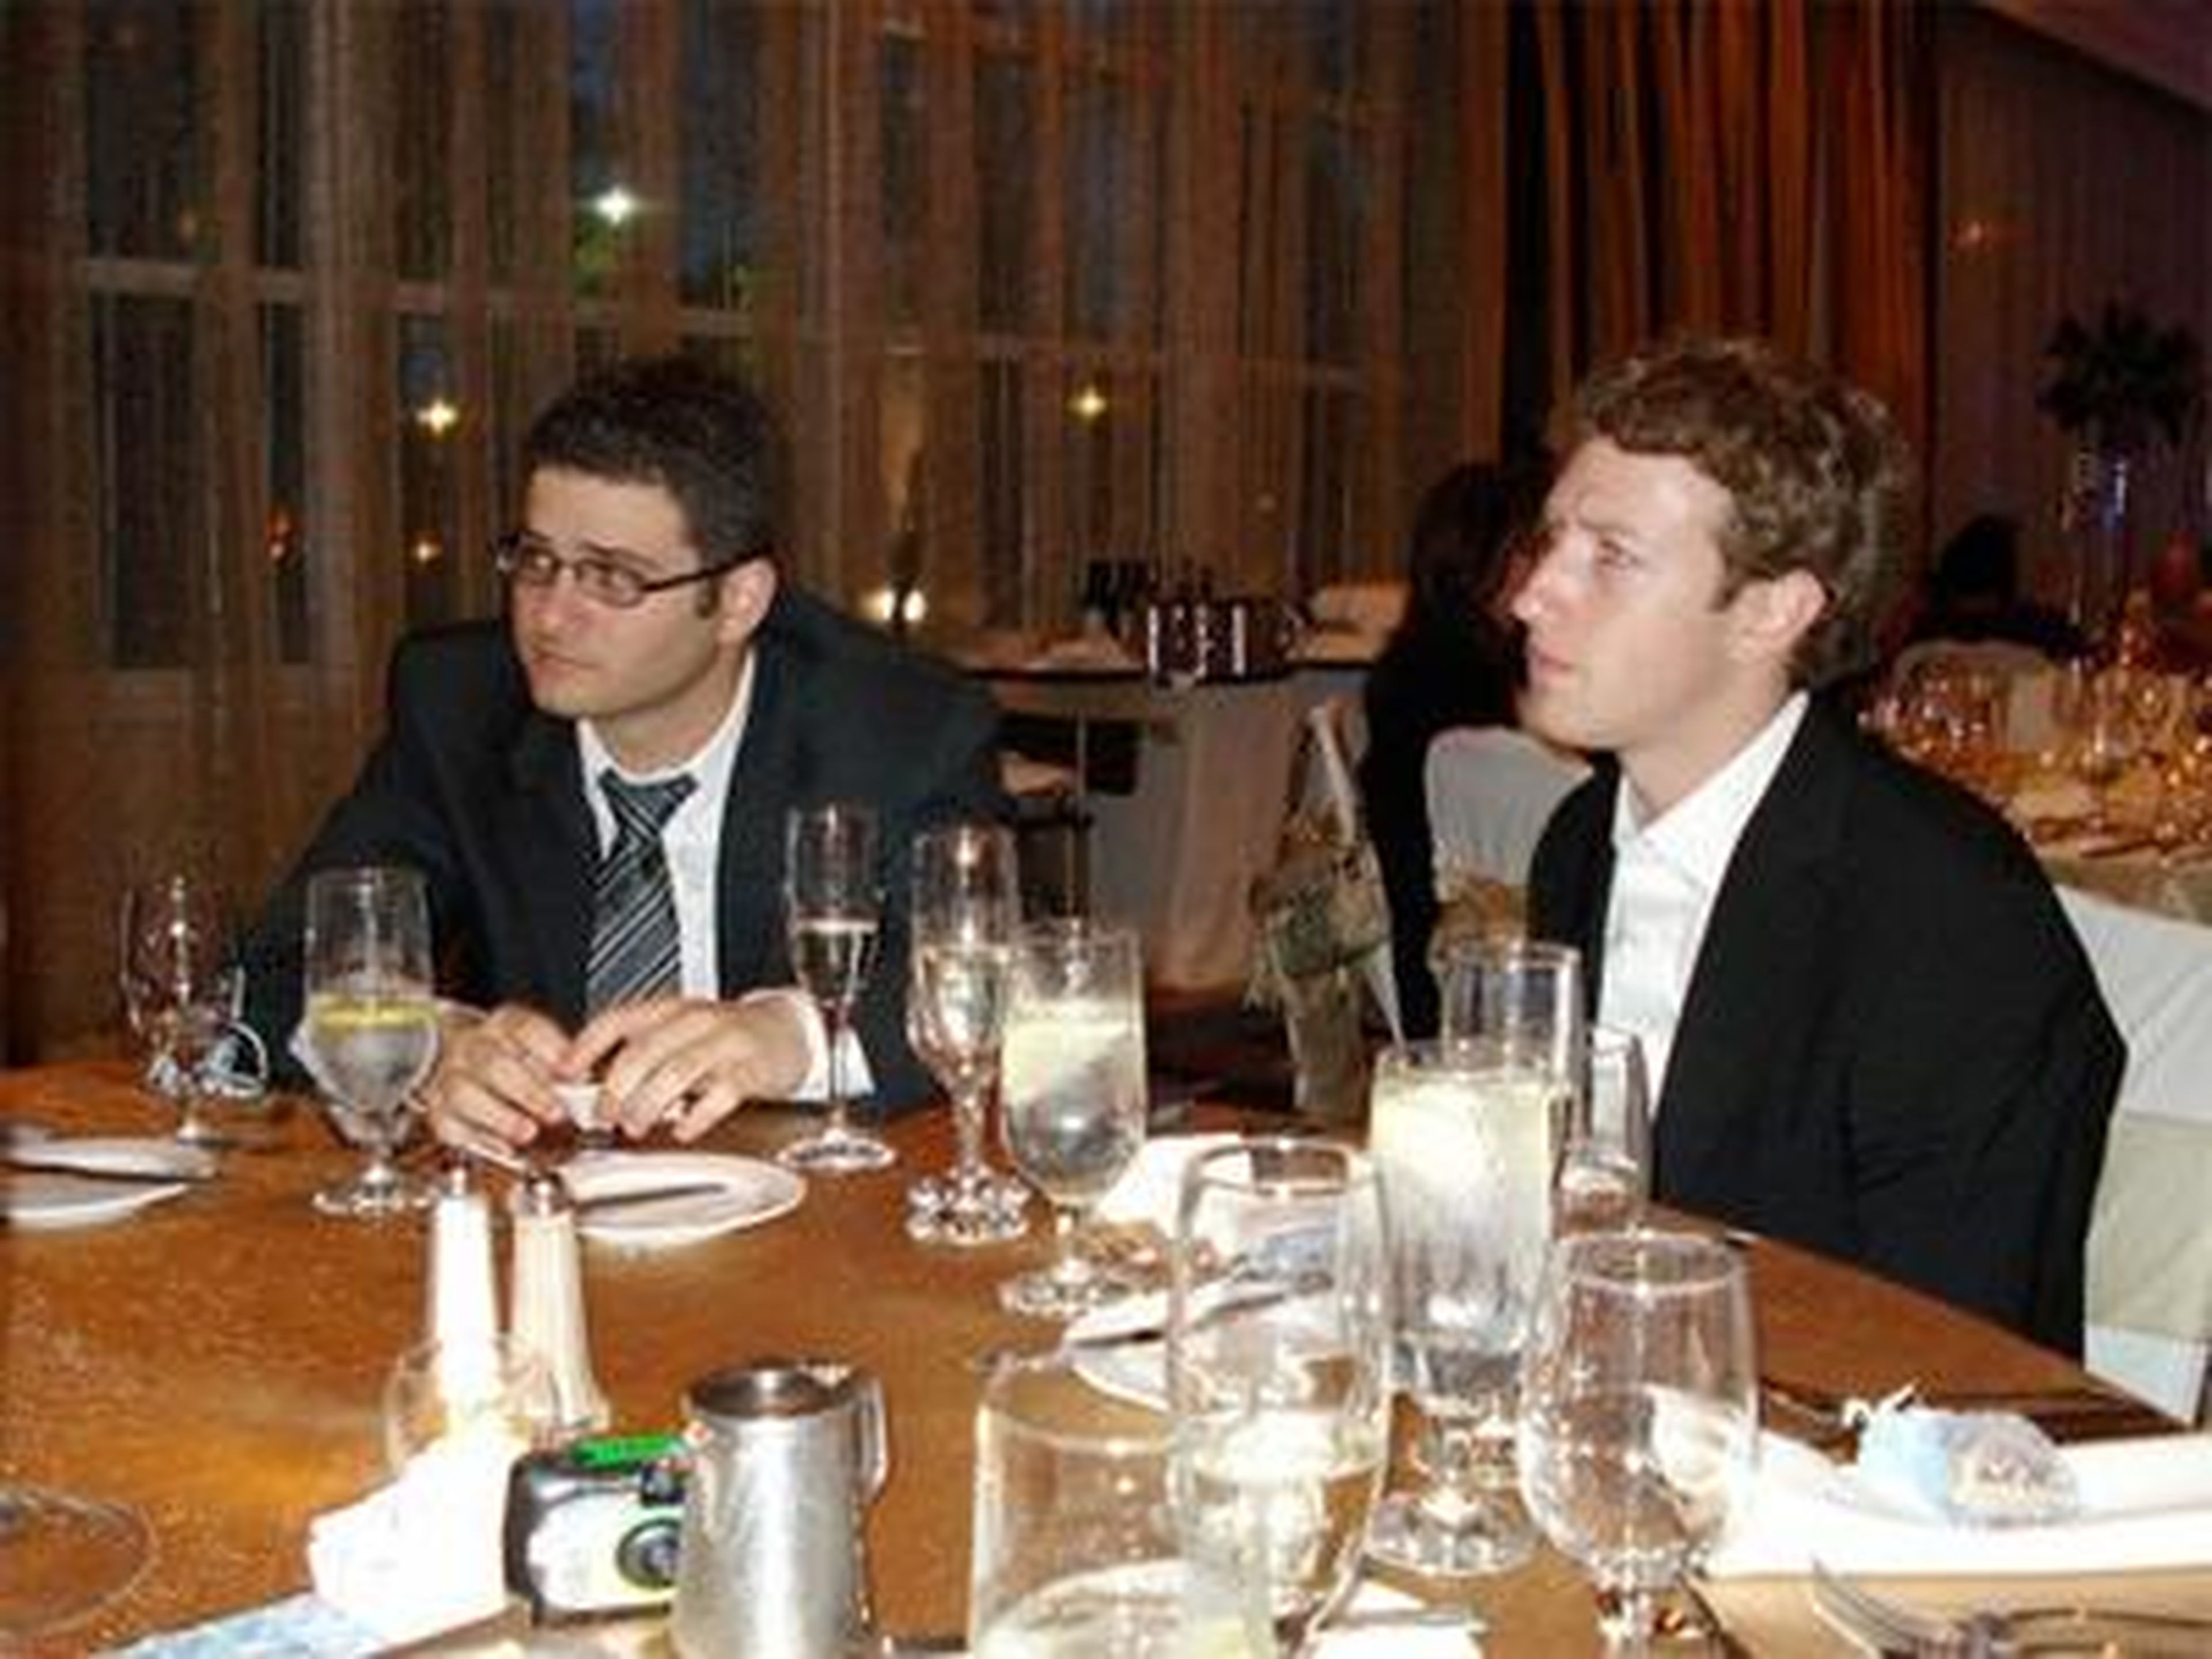 Dustin Moskovitz with Zuckerberg.